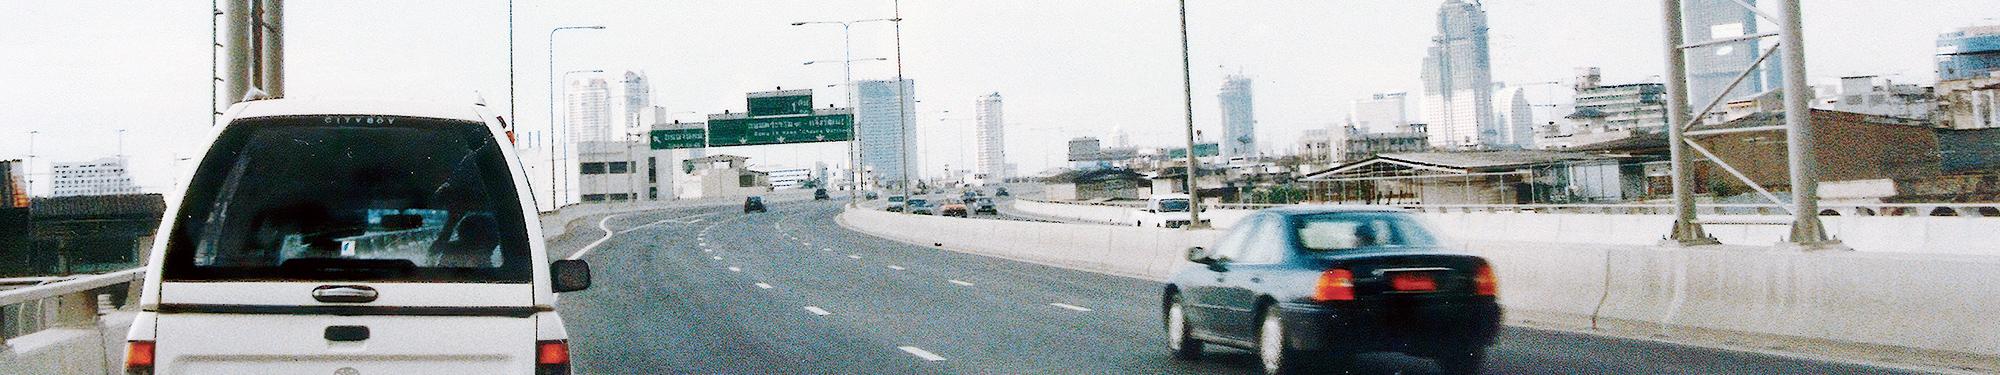 1993 泰国项目 : 首次在日本以外构建交通管制系统